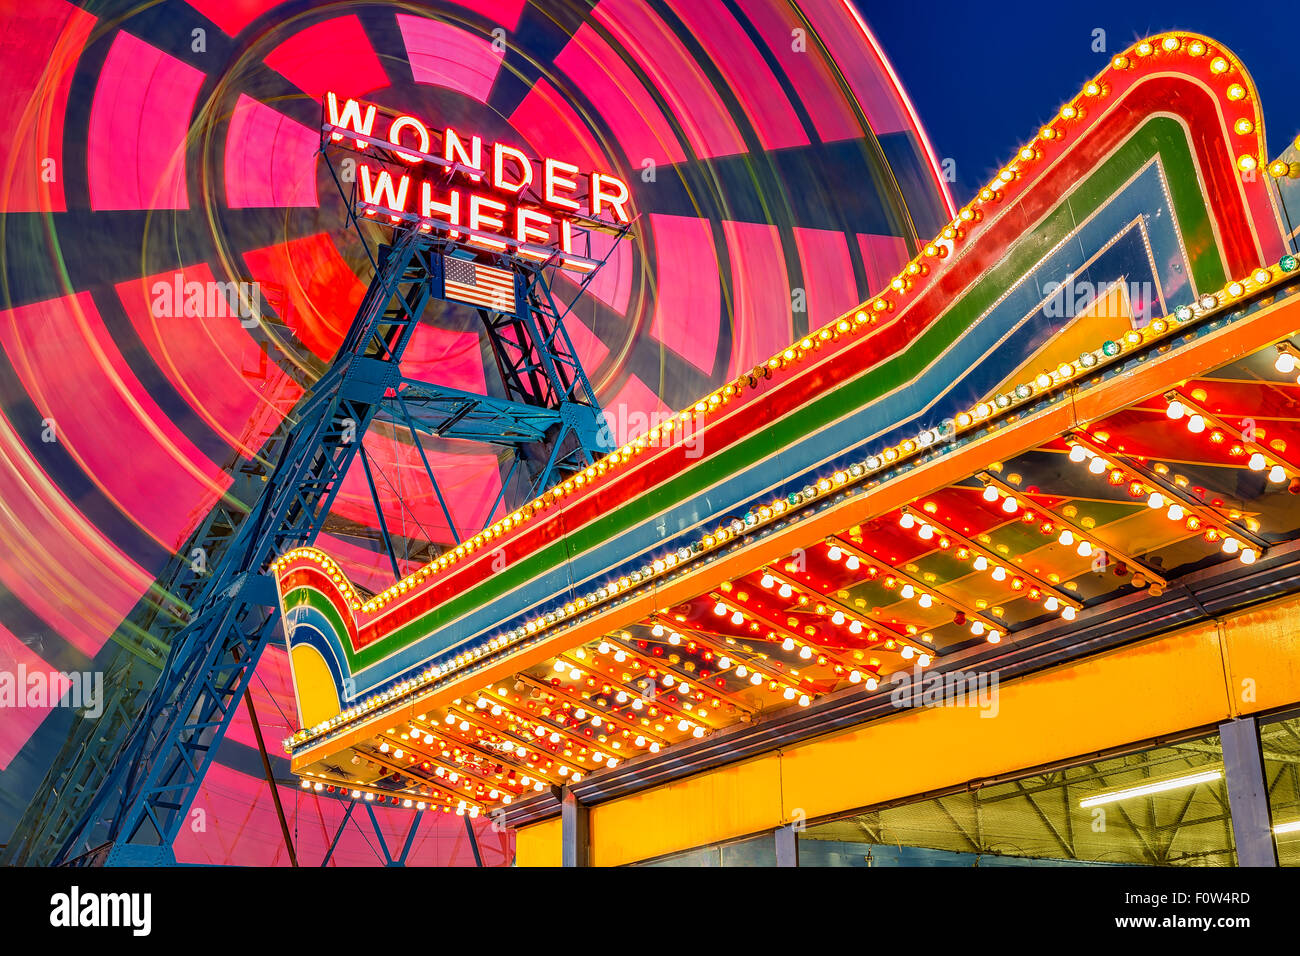 Wonder Wheel auf Coney Island - Exzentrische bunt Ferris Wheel in motion und beleuchtete Vergnügungspark, Festzelt an der berühmten Wahrzeichen DENO'S WONDER WHEEL Amusement Park Coney Island in Brooklyn, New York. Stockfoto